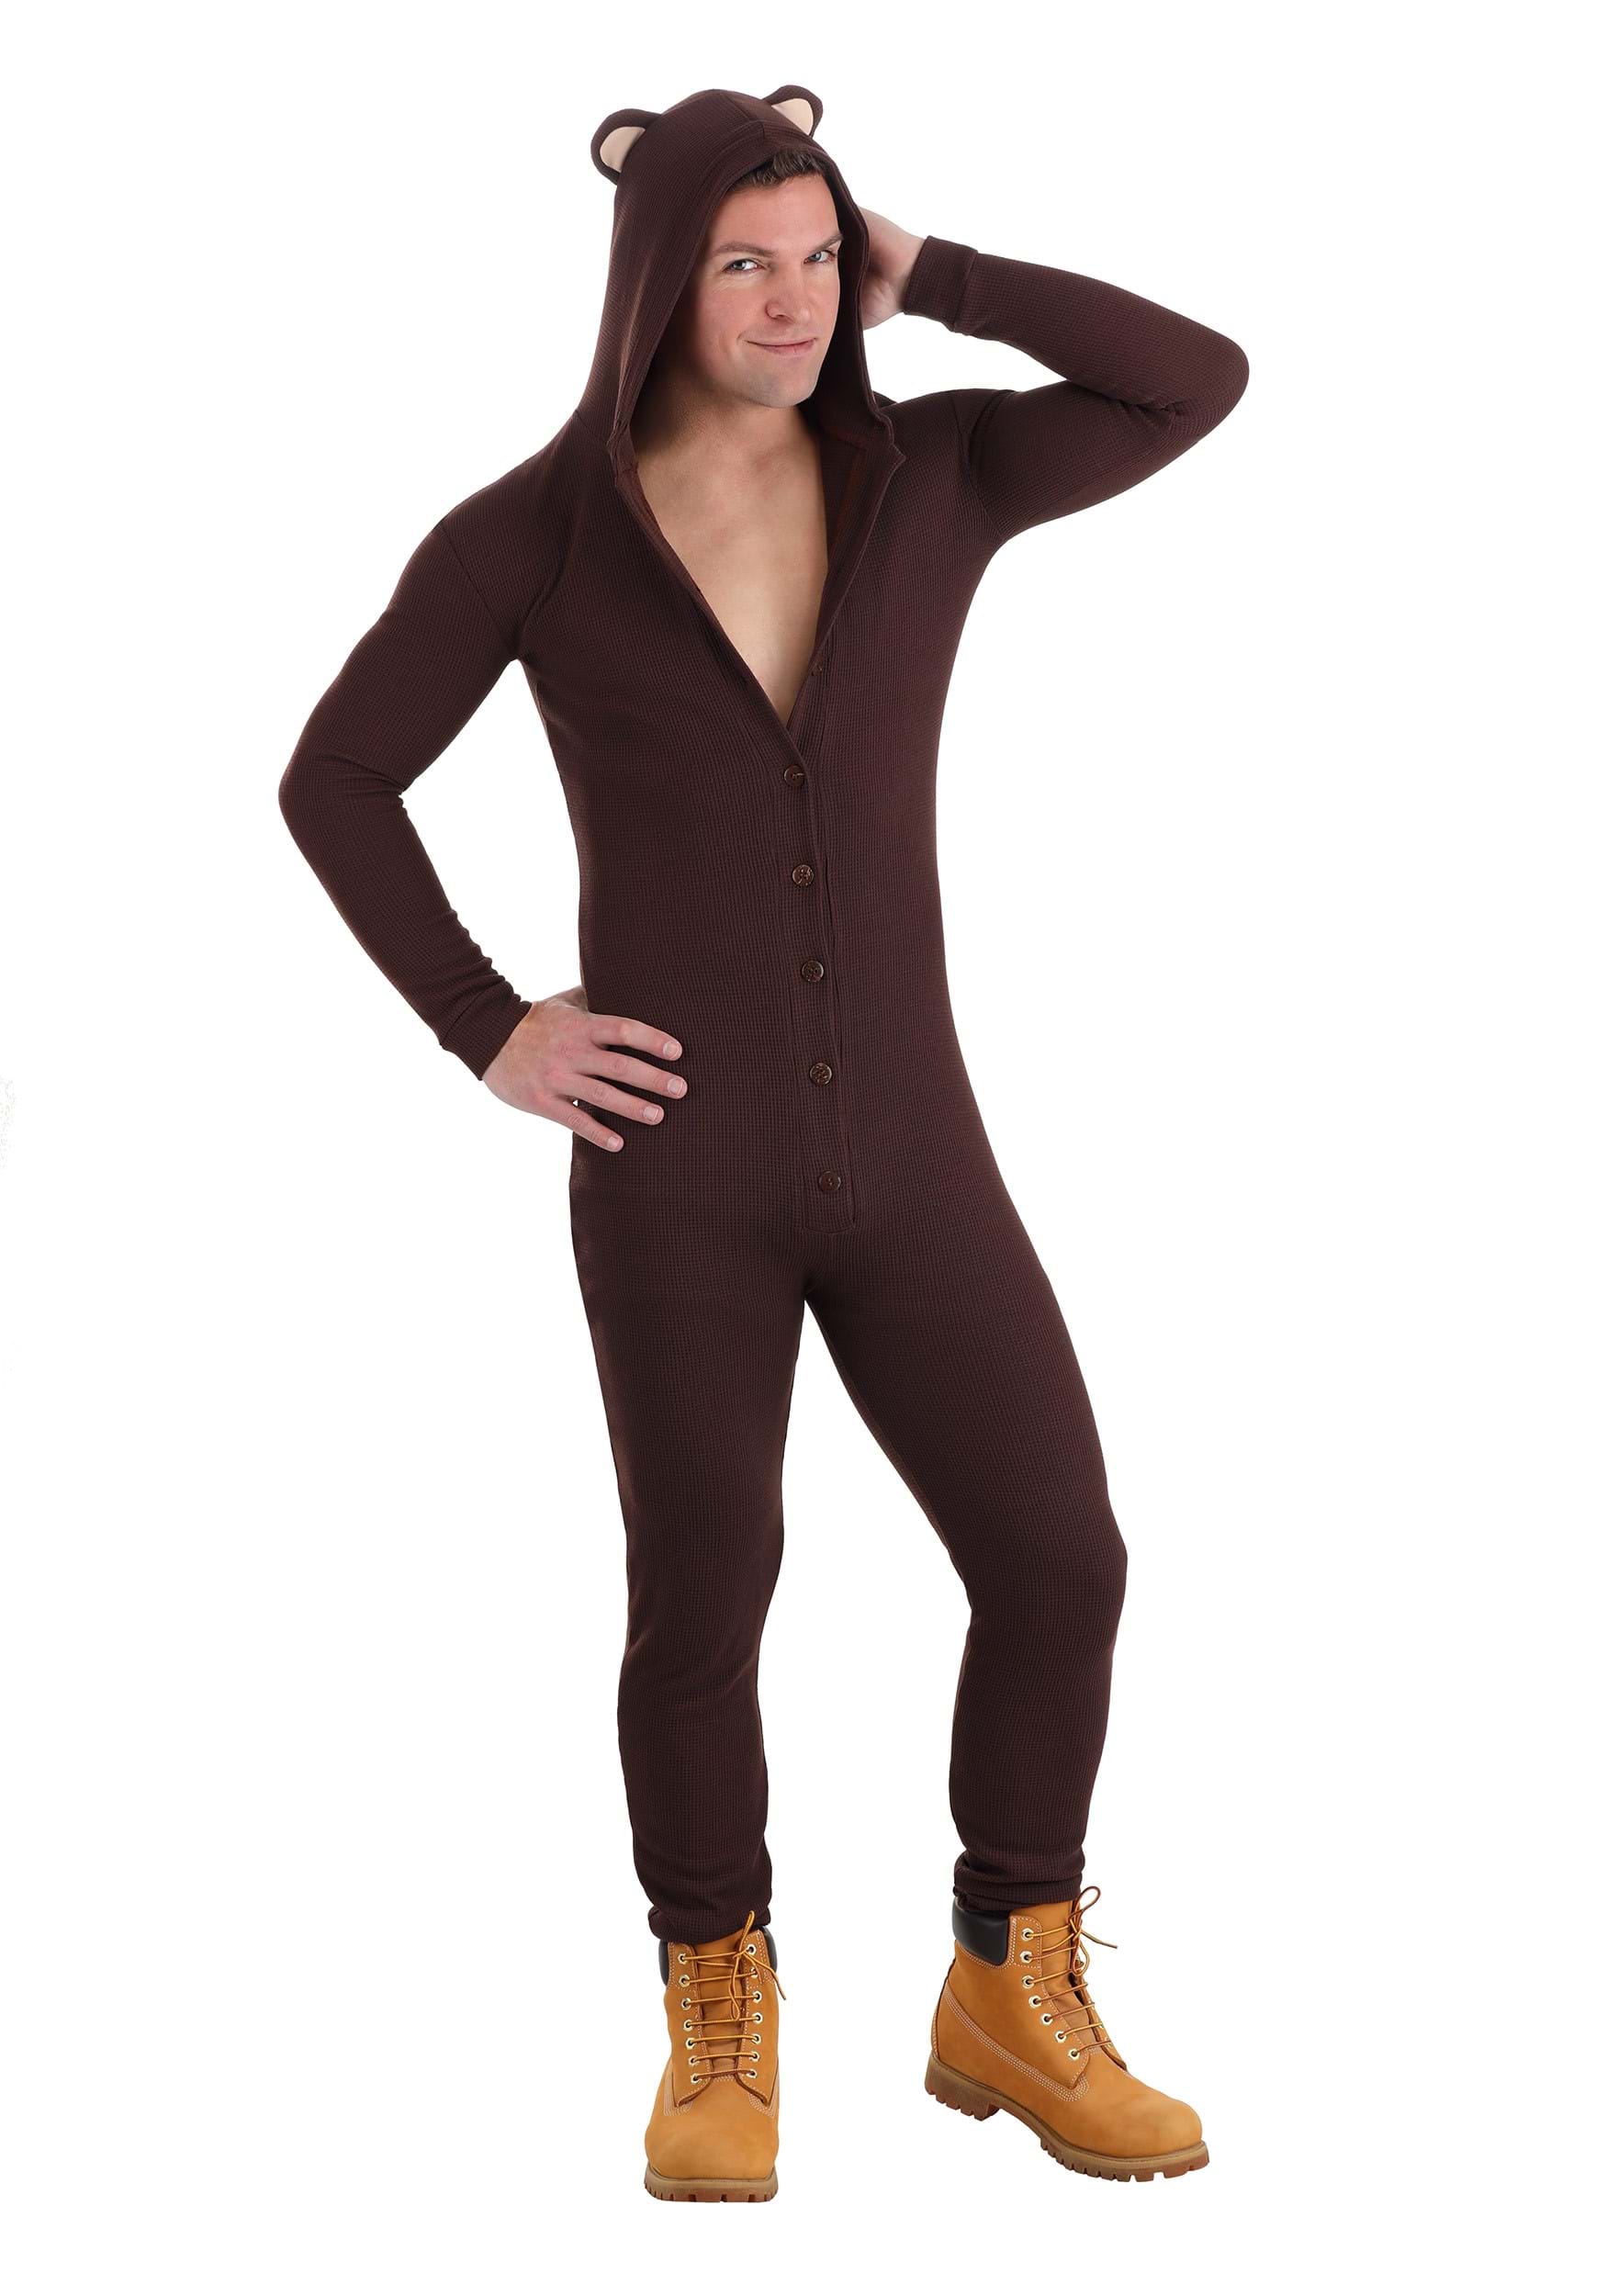 Men's Sexy Bear Fancy Dress Costume